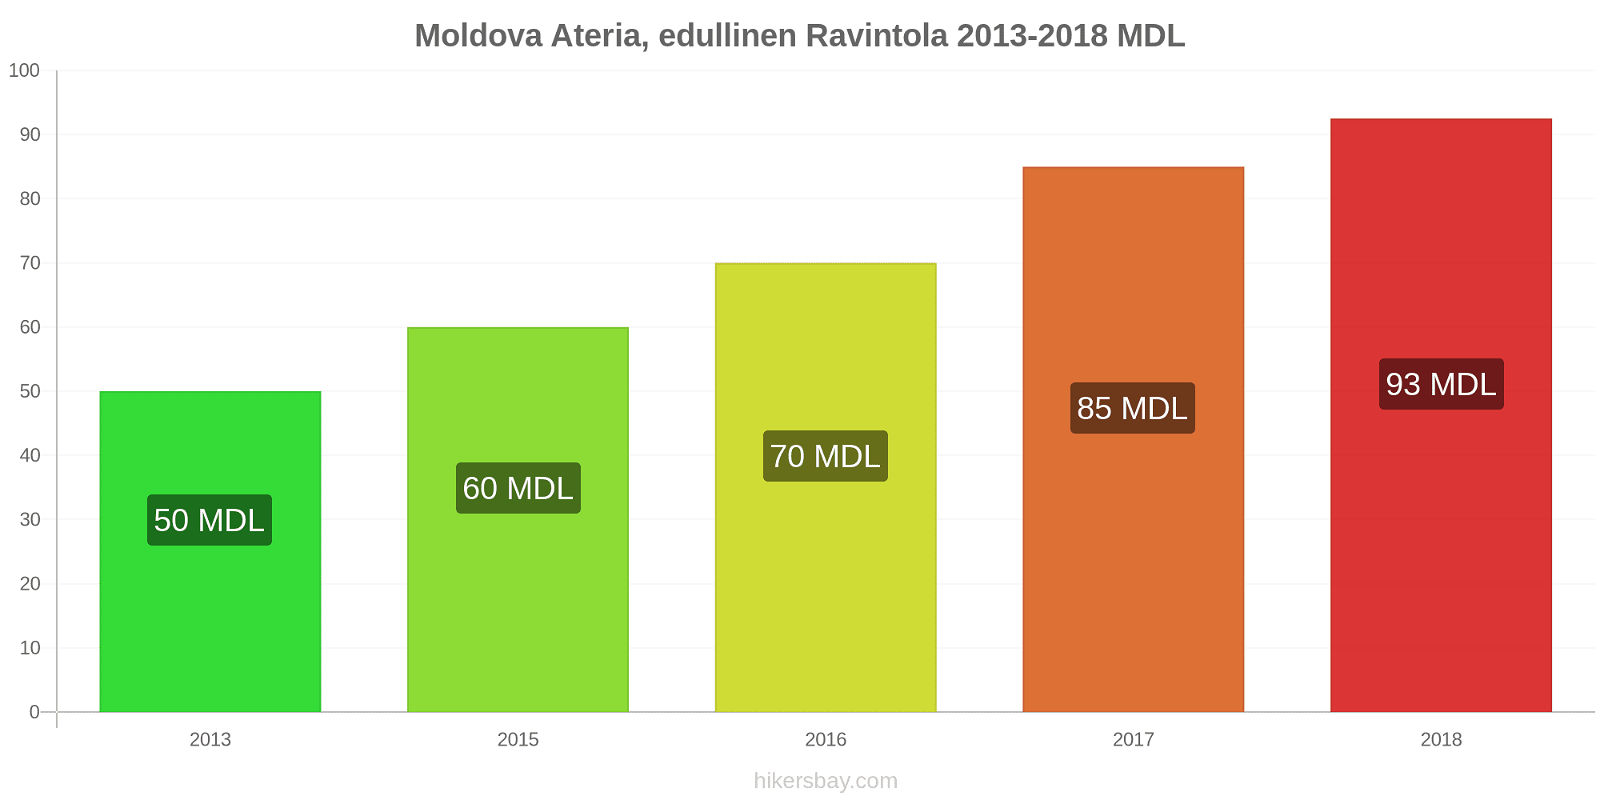 Moldova hintojen muutokset Ateria edullisessa ravintolassa hikersbay.com